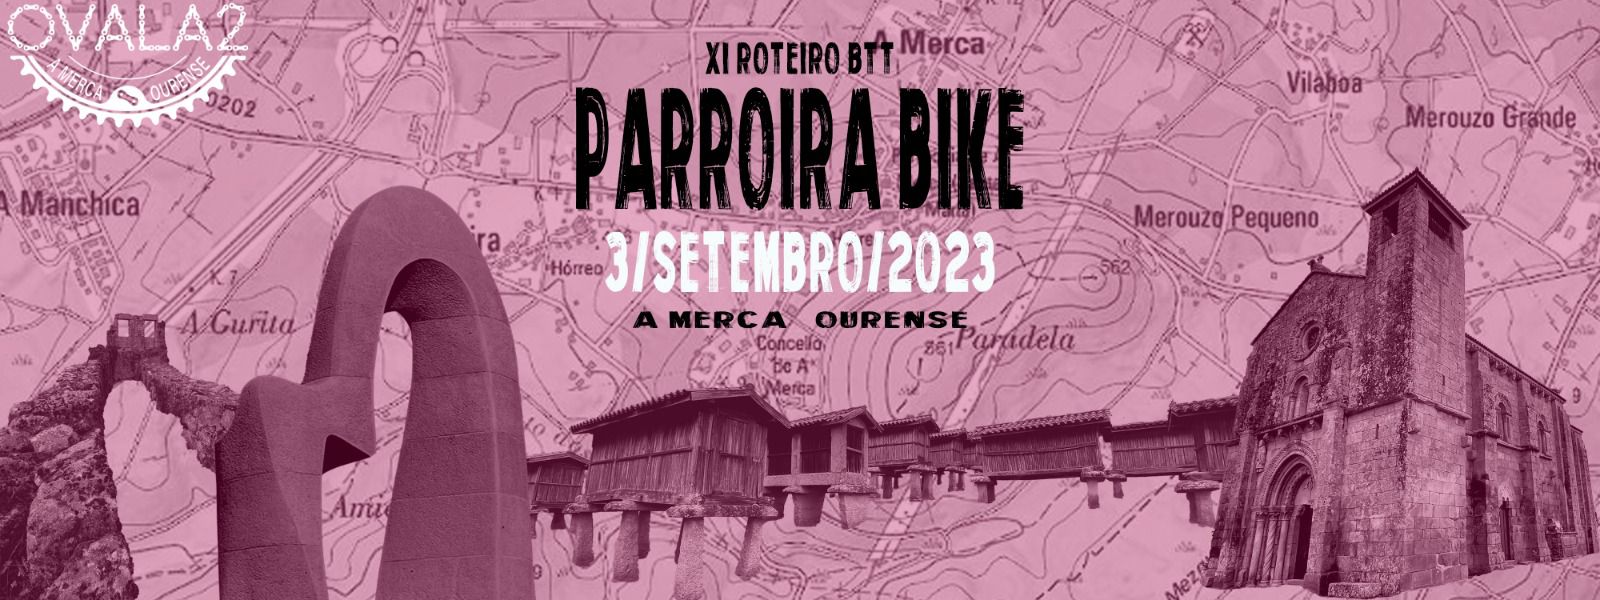 XI Parroira Bike 2023